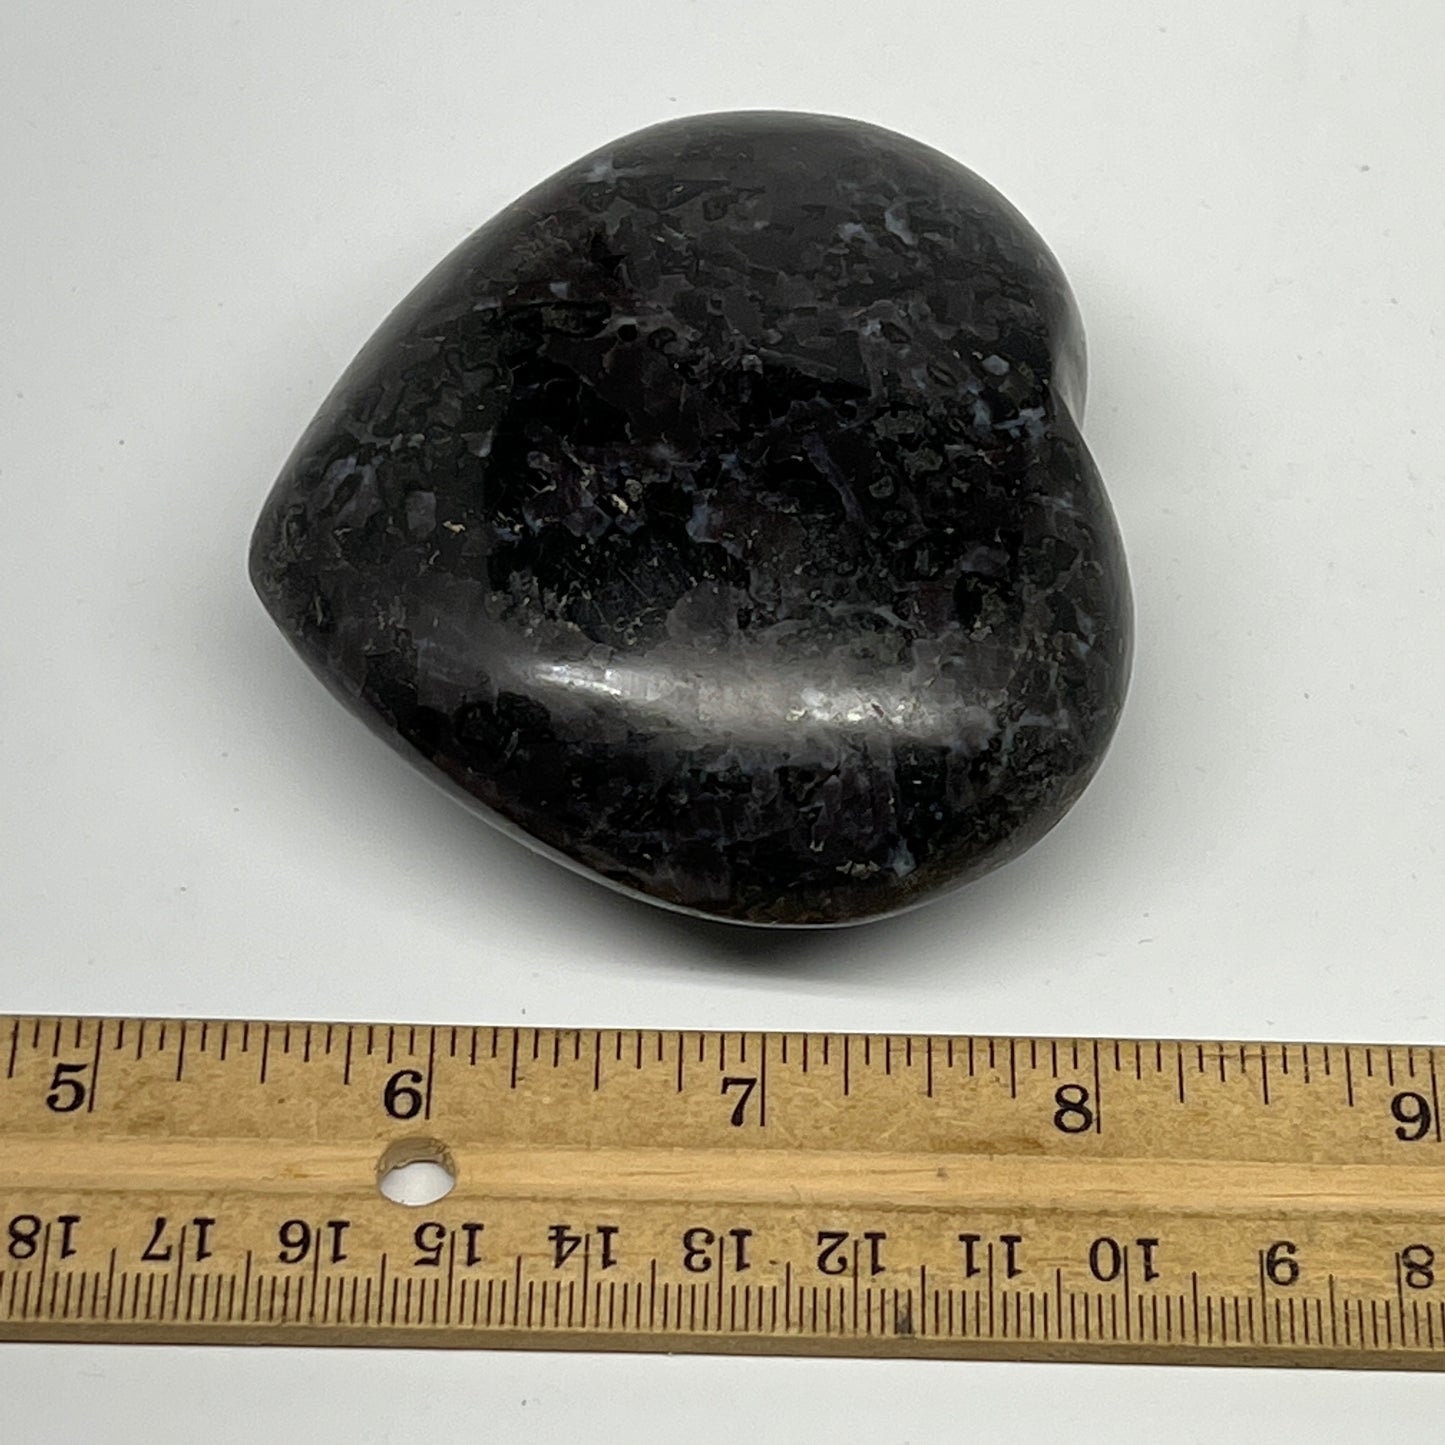 257.5g,2.8"x3.1"x1.3" Indigo Gabro Merlinite Heart Gemstone @Madagascar, B19958